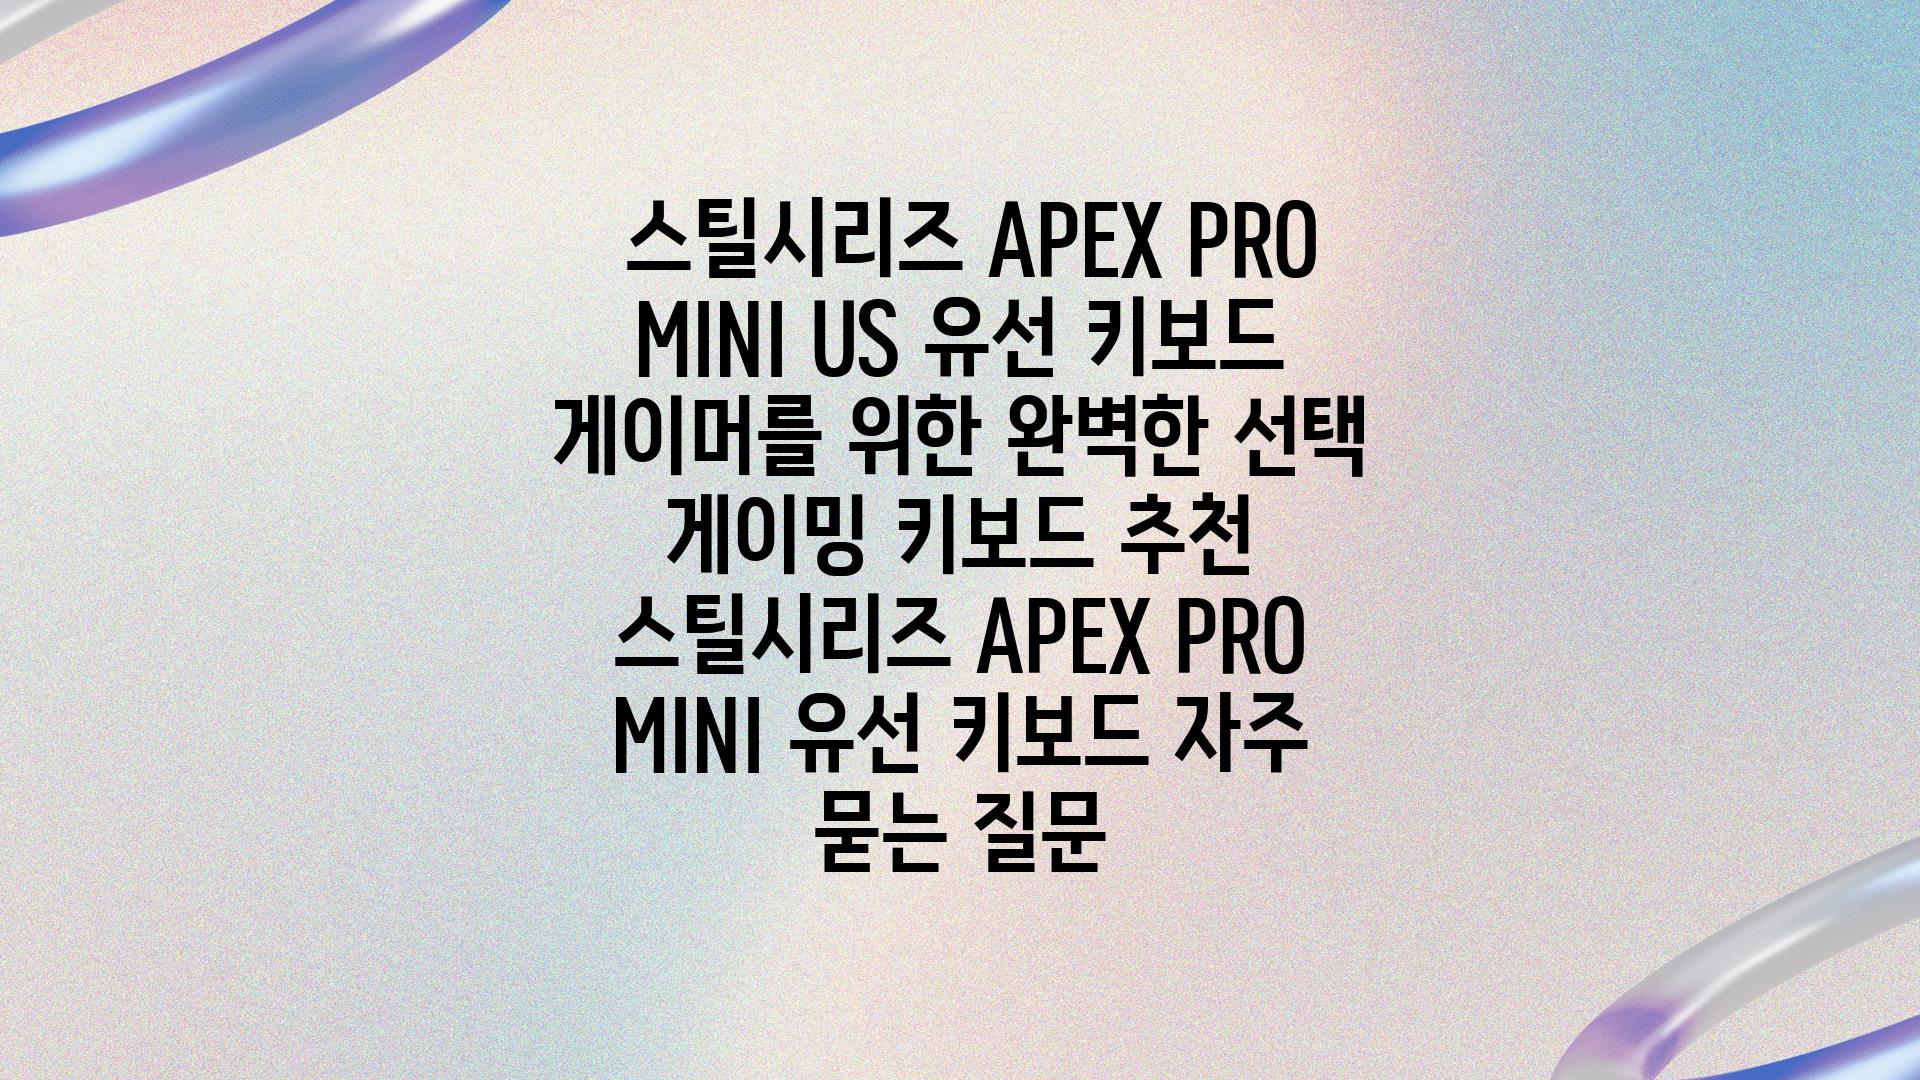  스틸시리즈 APEX PRO MINI US 유선 키보드 게이머를 위한 완벽한 선택  게이밍 키보드 추천 스틸시리즈 APEX PRO MINI 유선 키보드 자주 묻는 질문